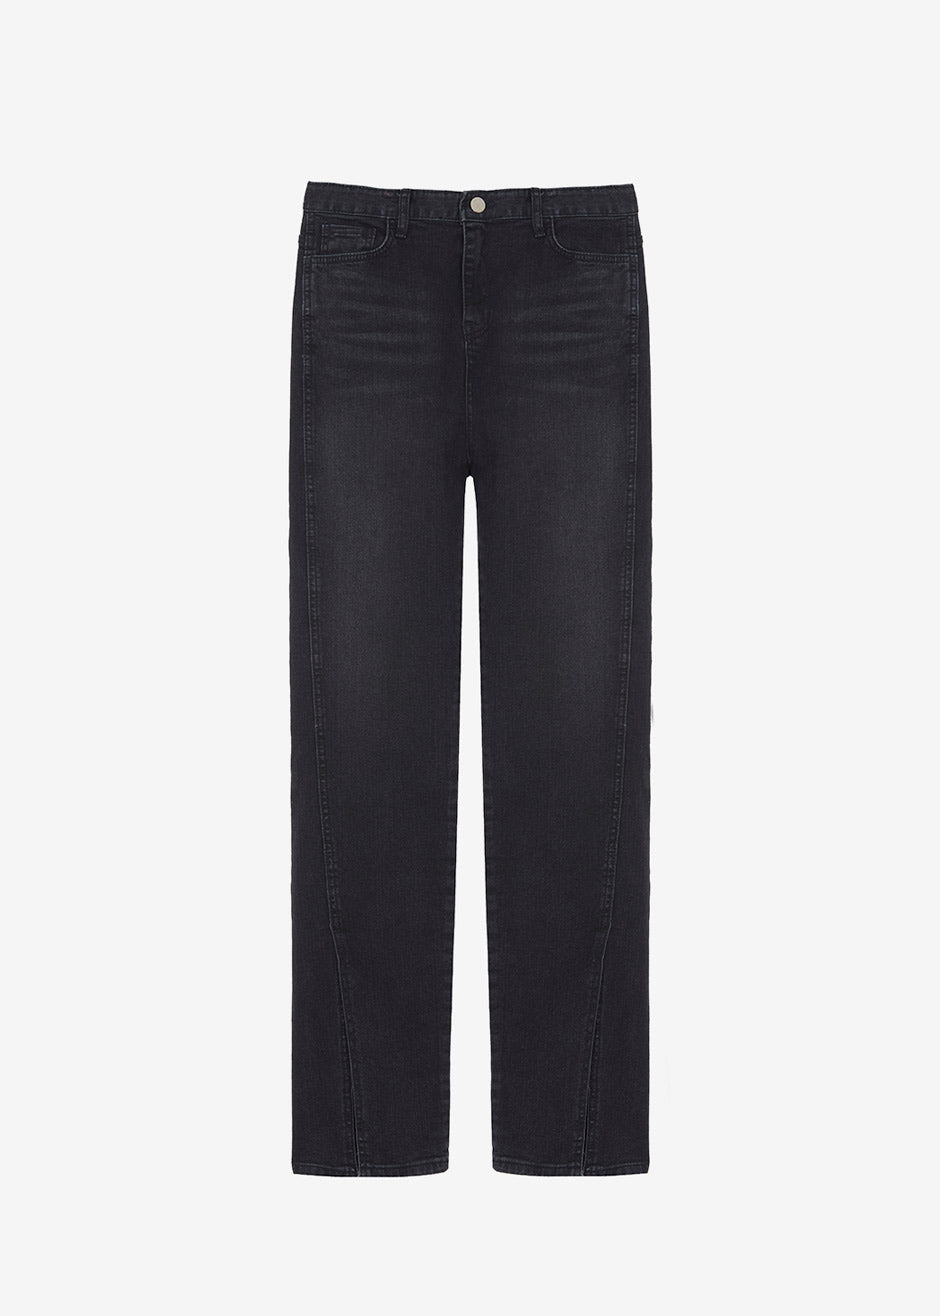 Destry Front Slit Jeans - Black - 9